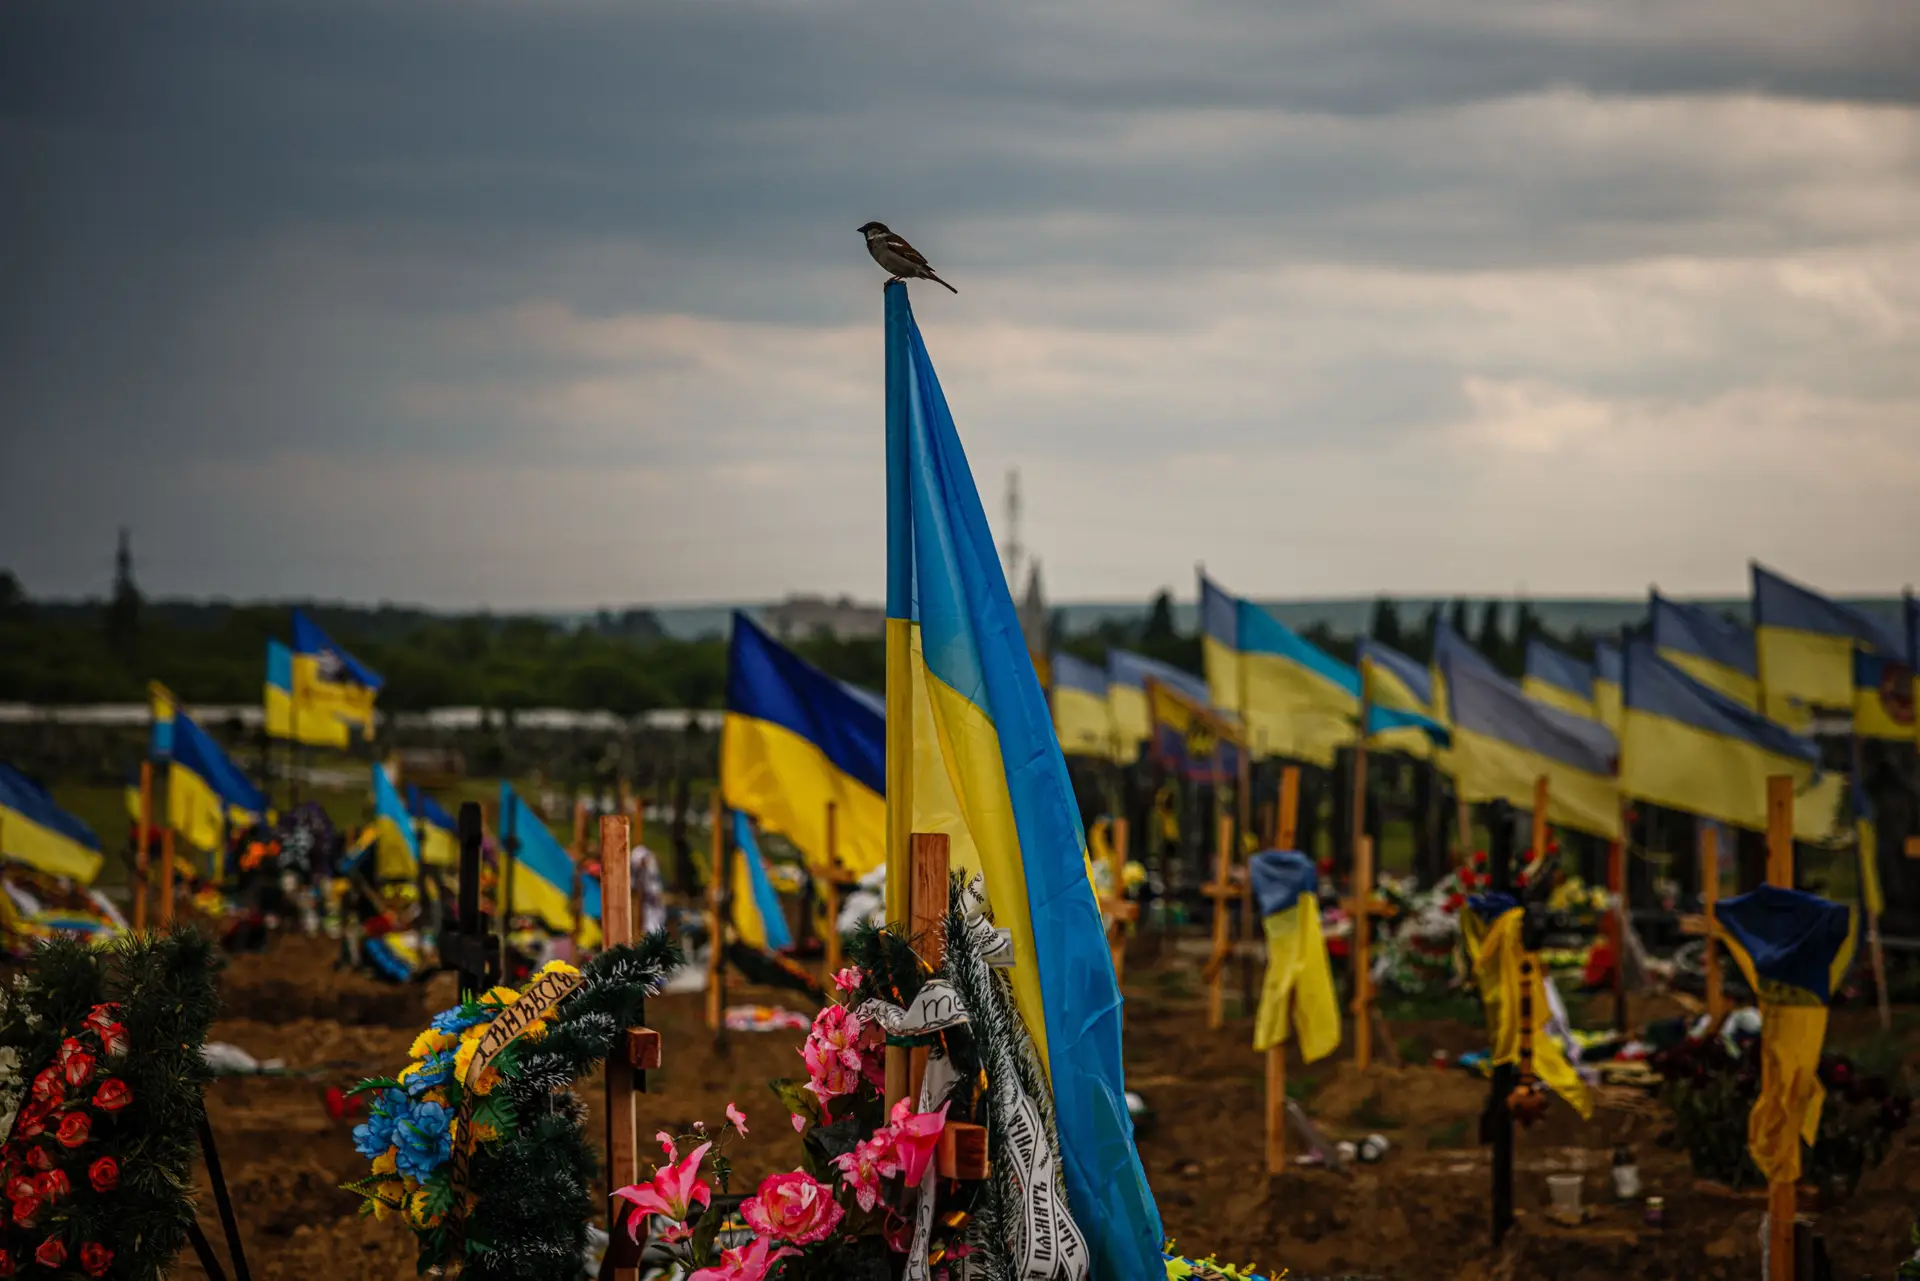 MORTE — Neste cemitério de Kharkiv, as bandeiras da Ucrânia identificam as sepulturas de militares, que deram a vida pelo país